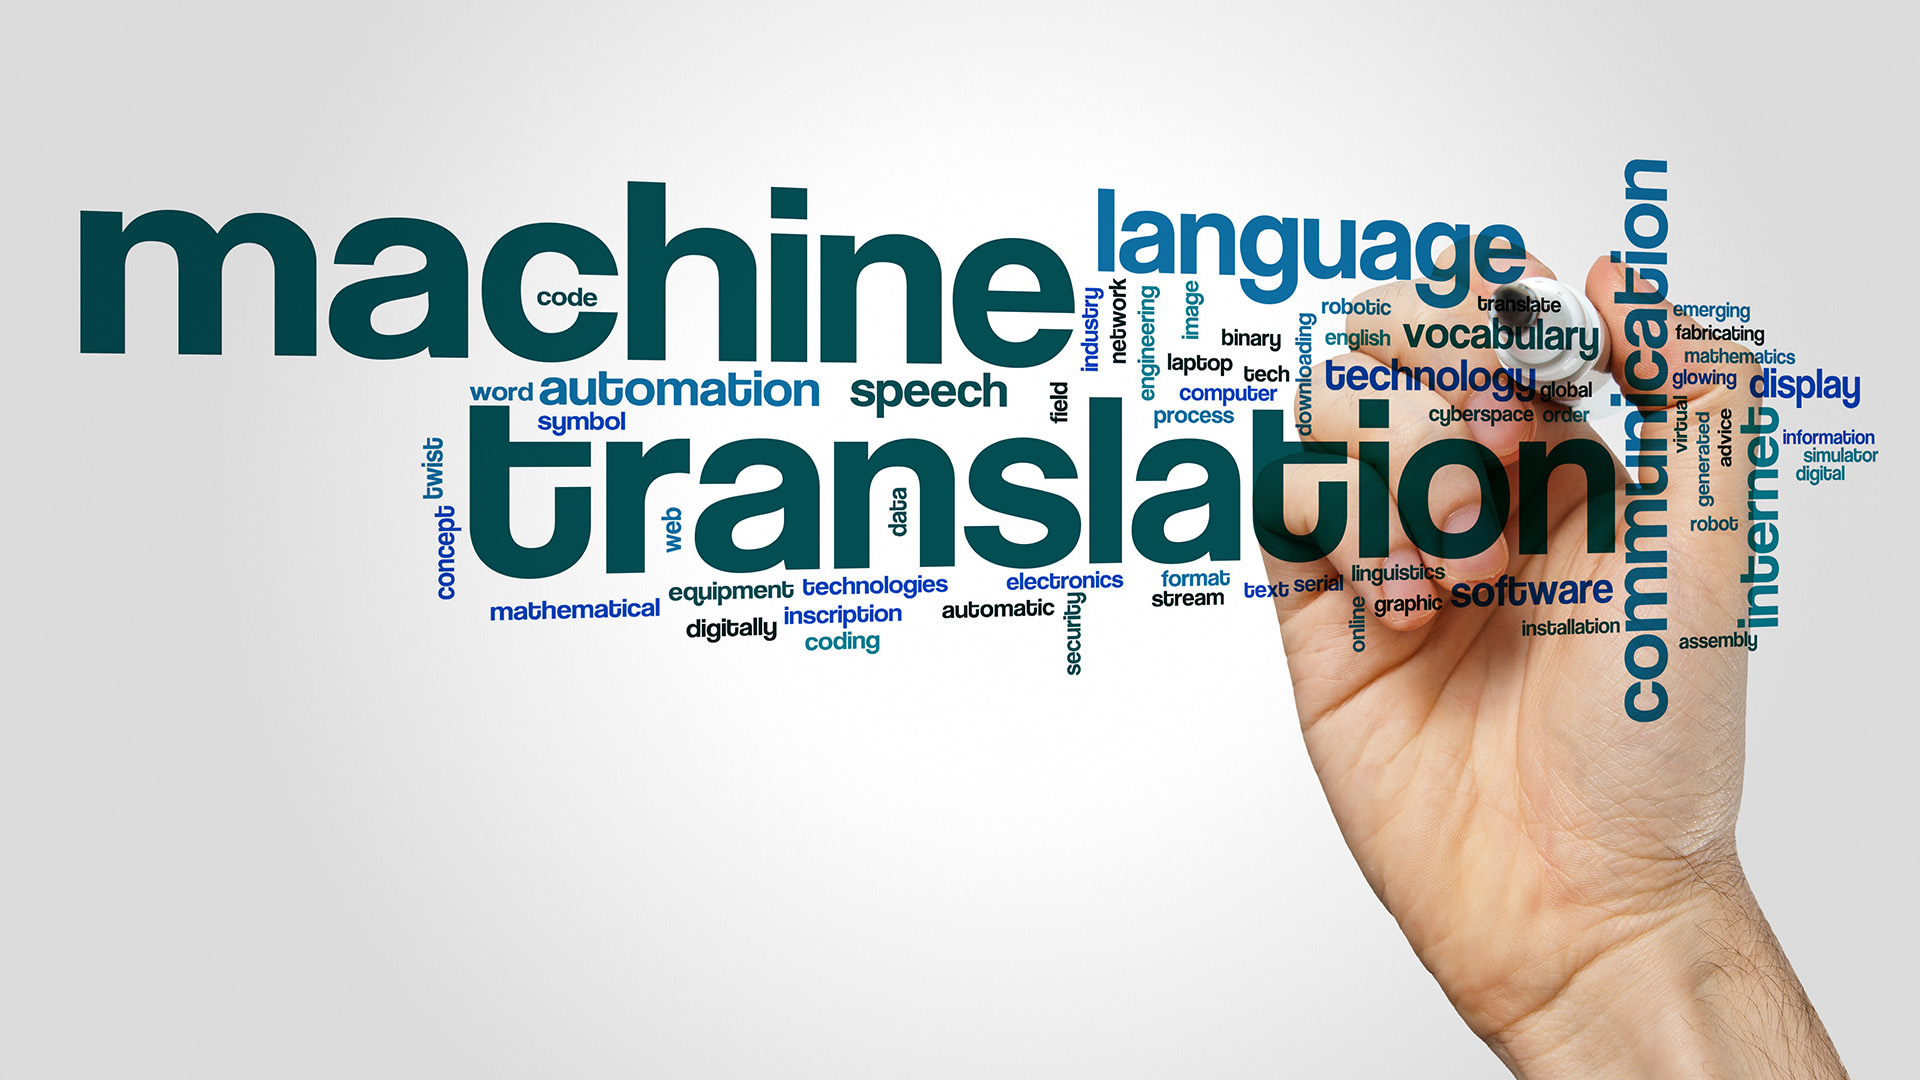 Machinery перевод. Машинный перевод. История машинного перевода. Будущее машинного перевода. Машинный перевод Эстетика.